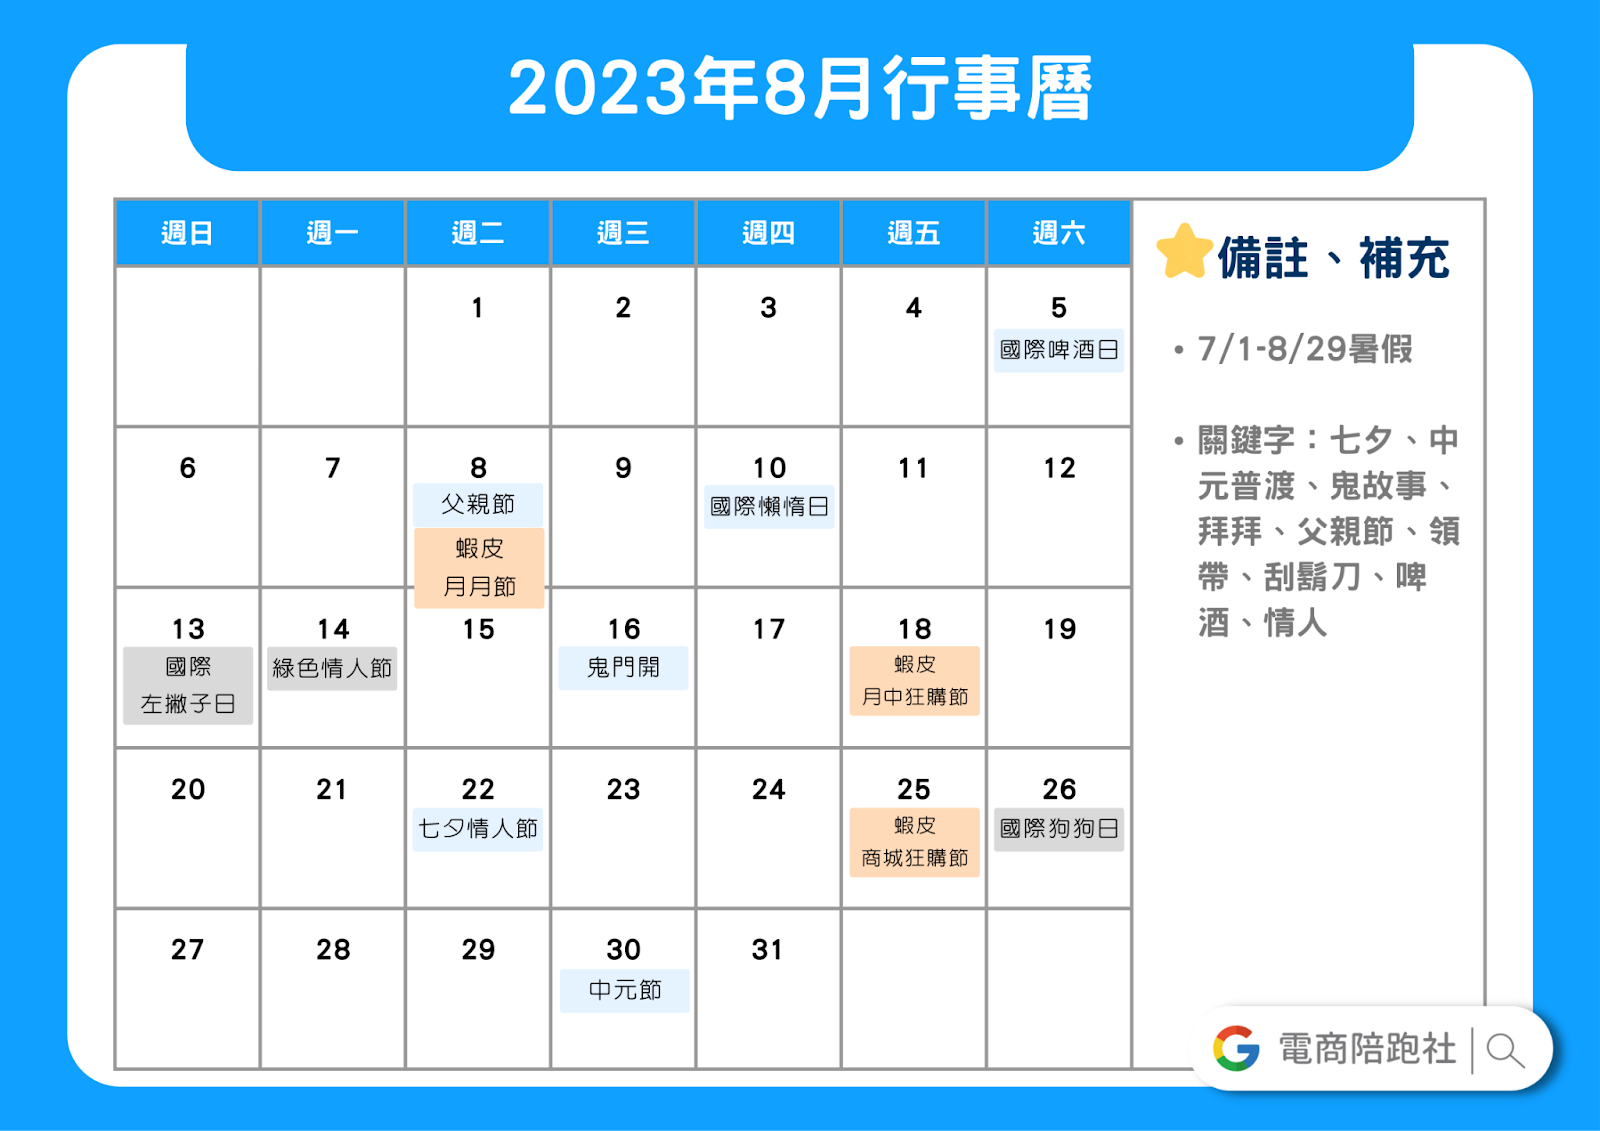 2023節慶行銷行事曆-8 月